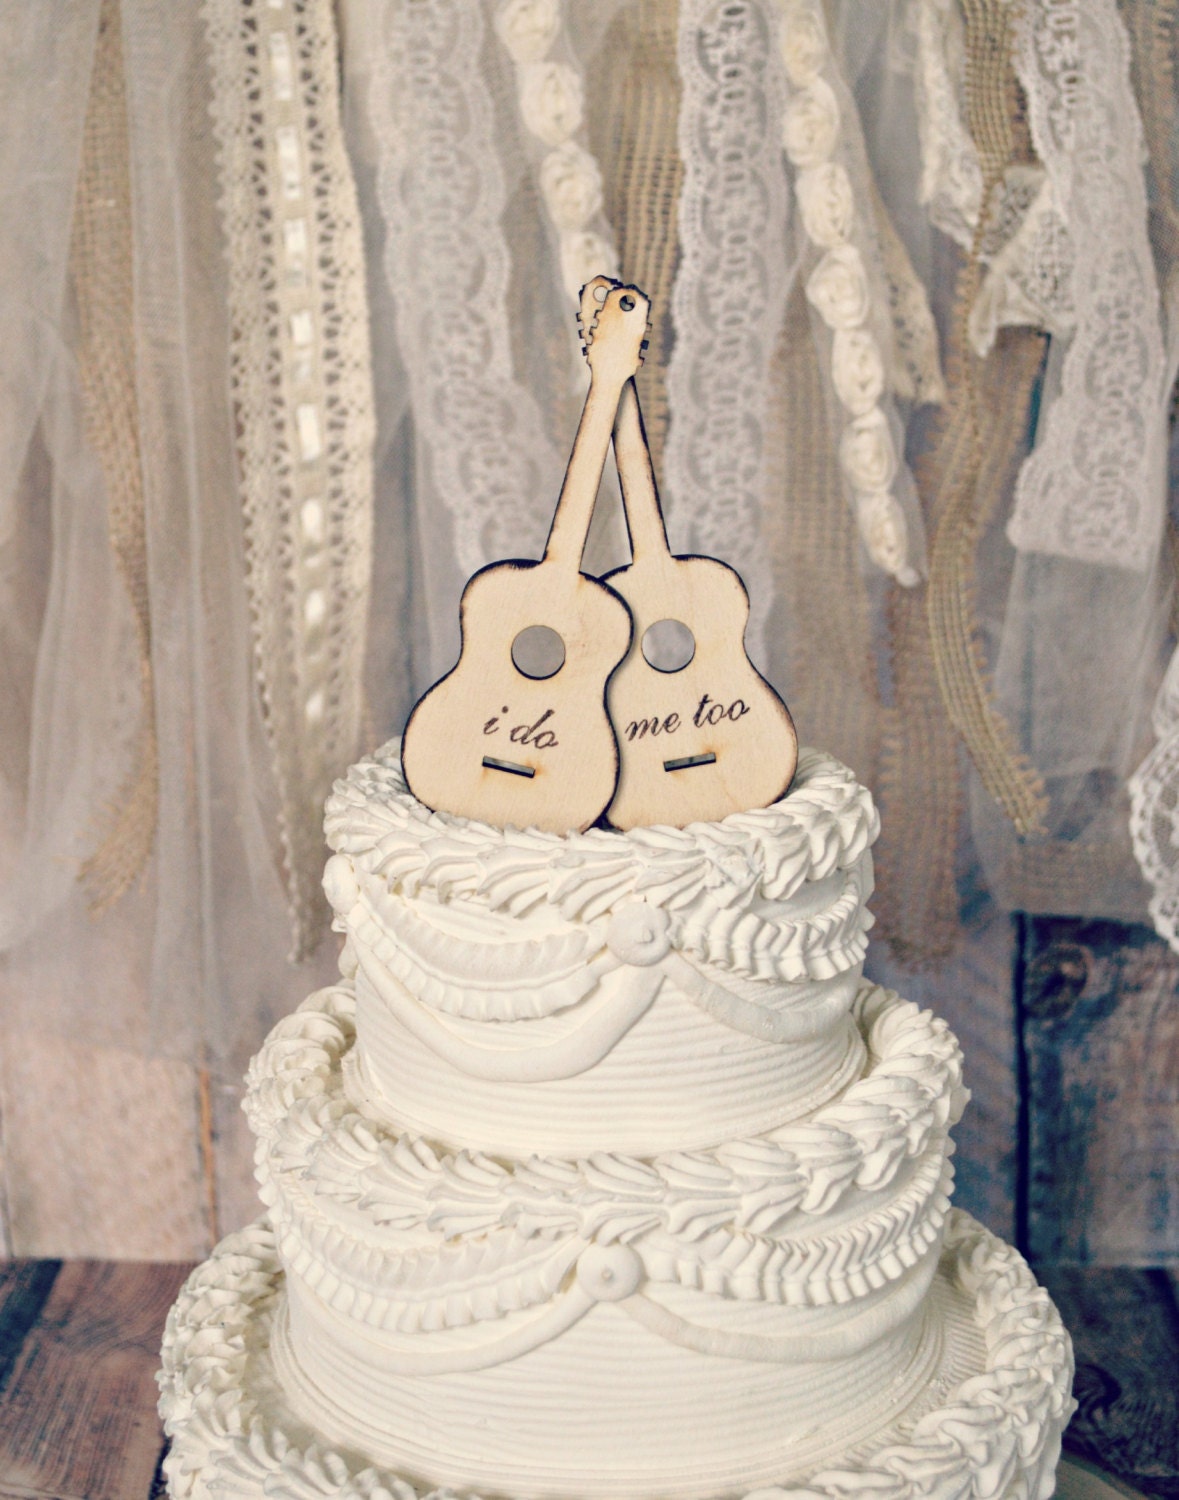  Guitar  musician wedding  cake  topper  groom s  cake  bridal